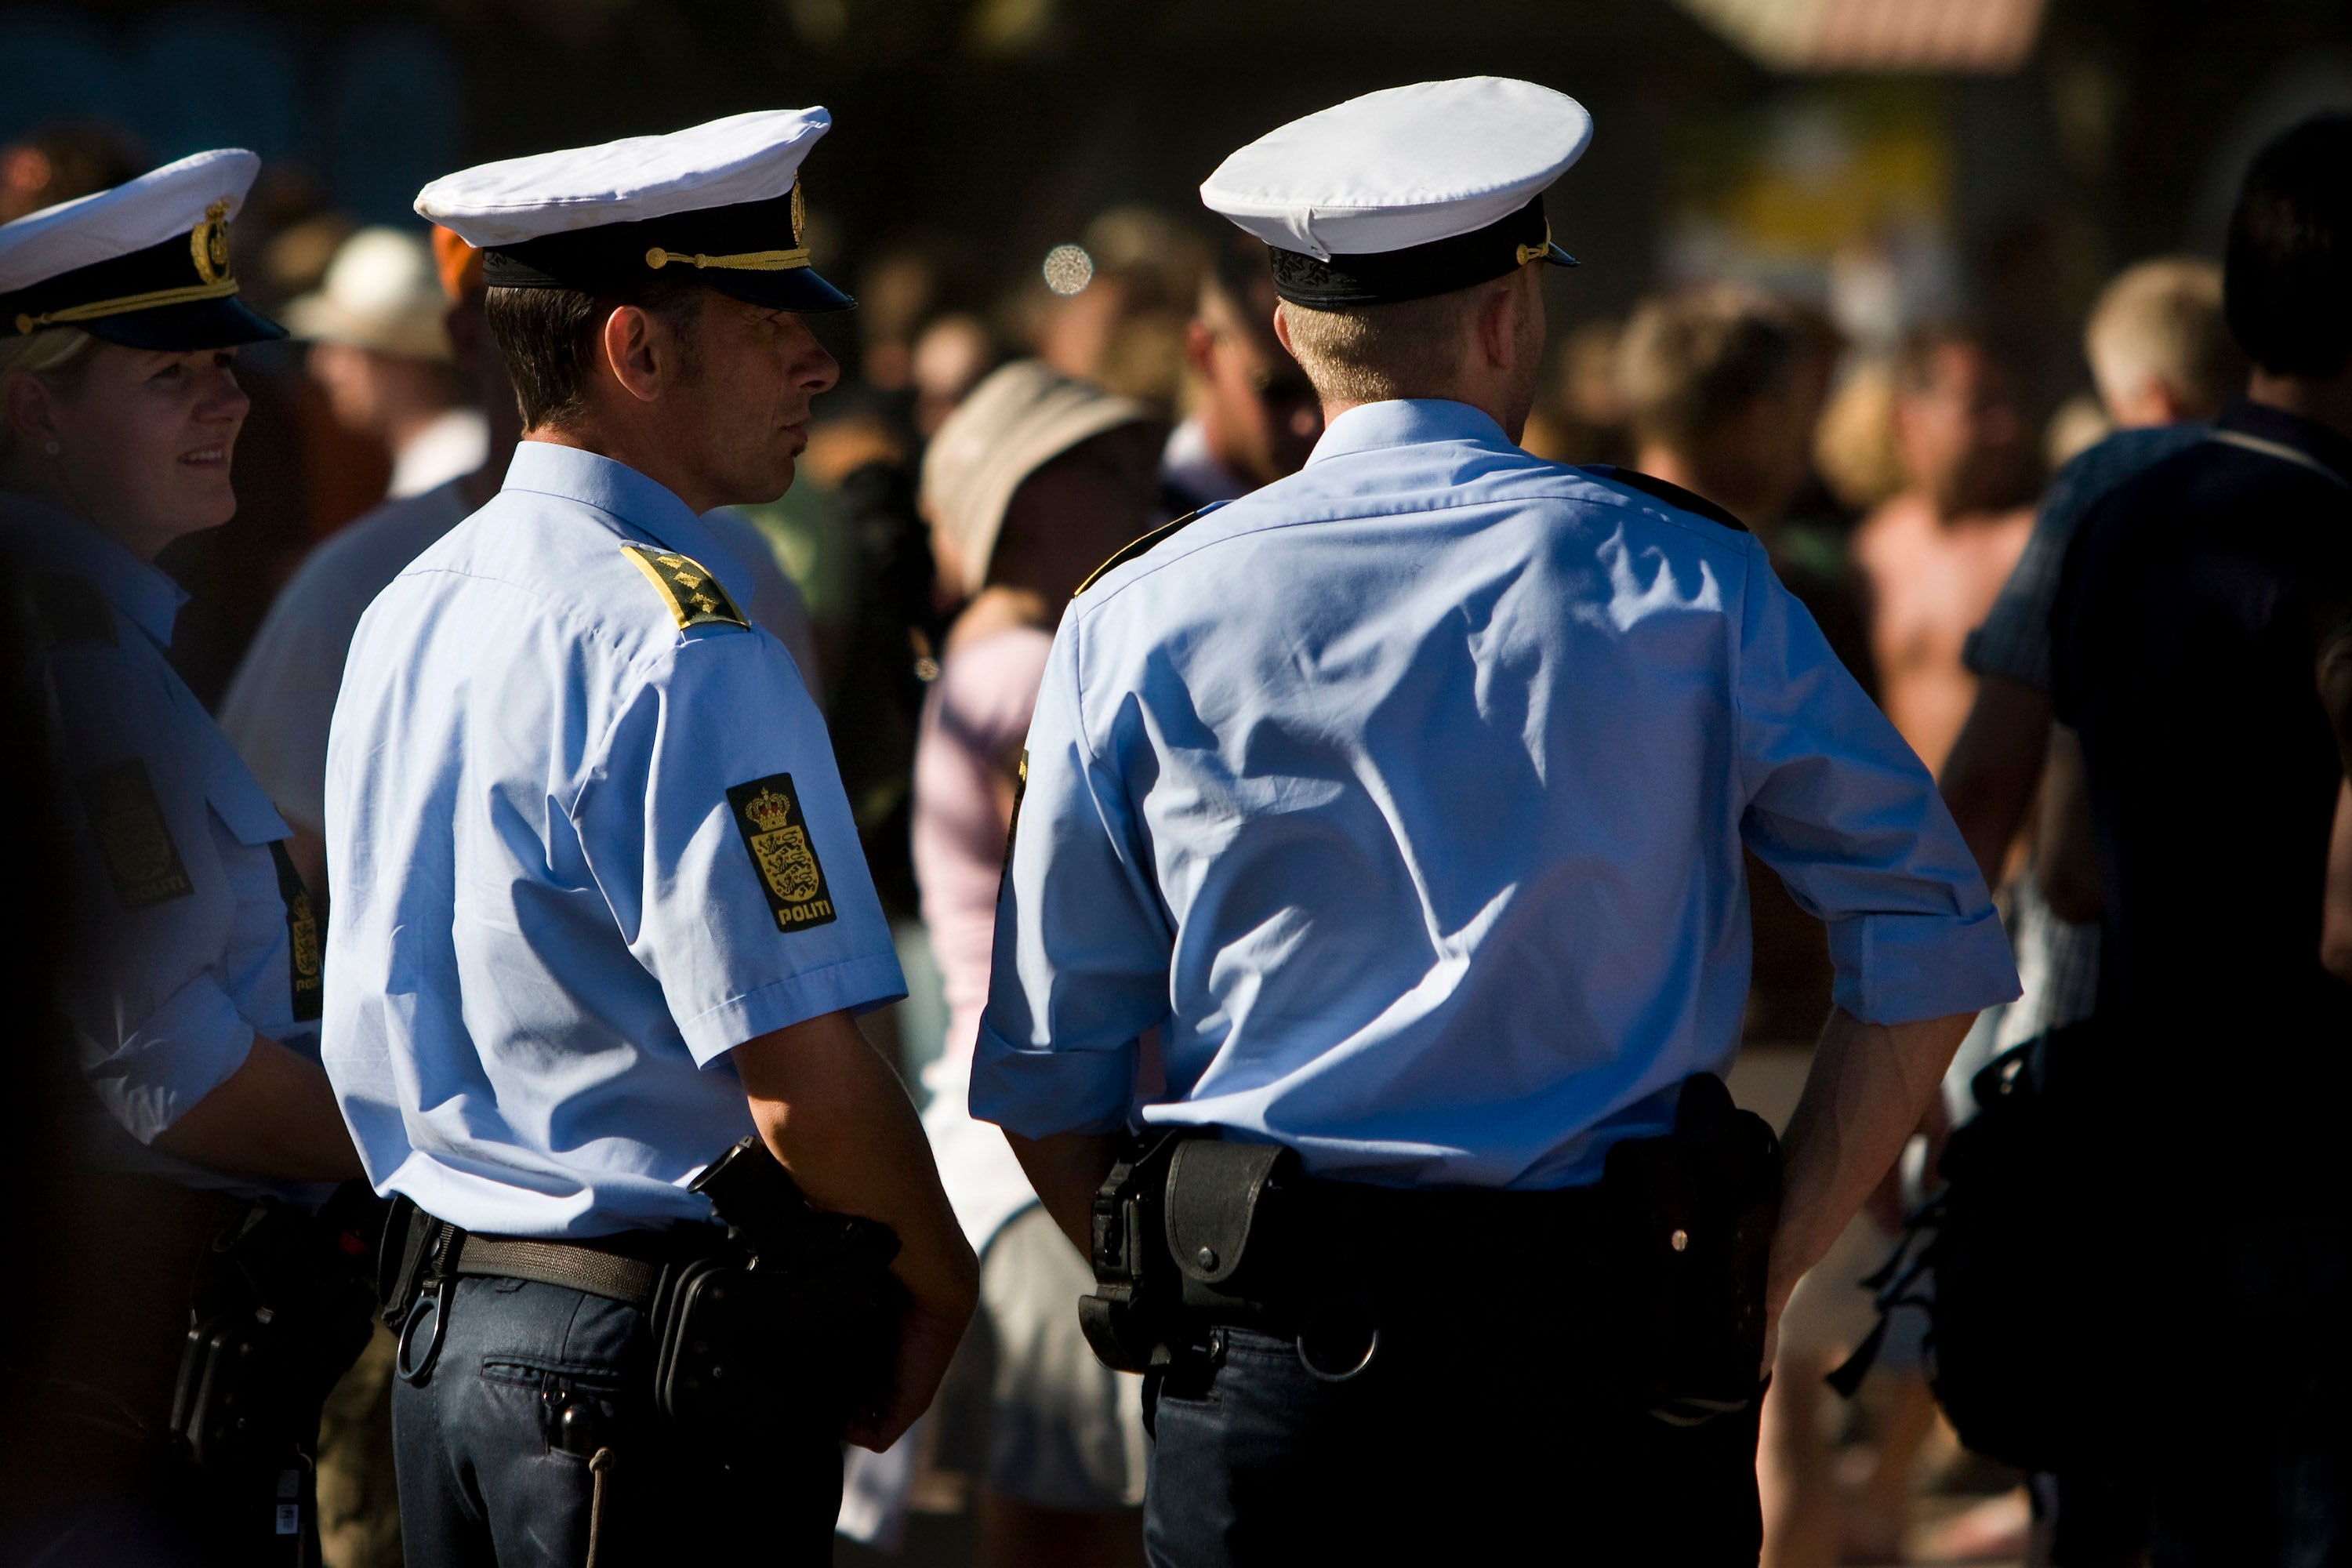 Police patrol at Roskilde Festival